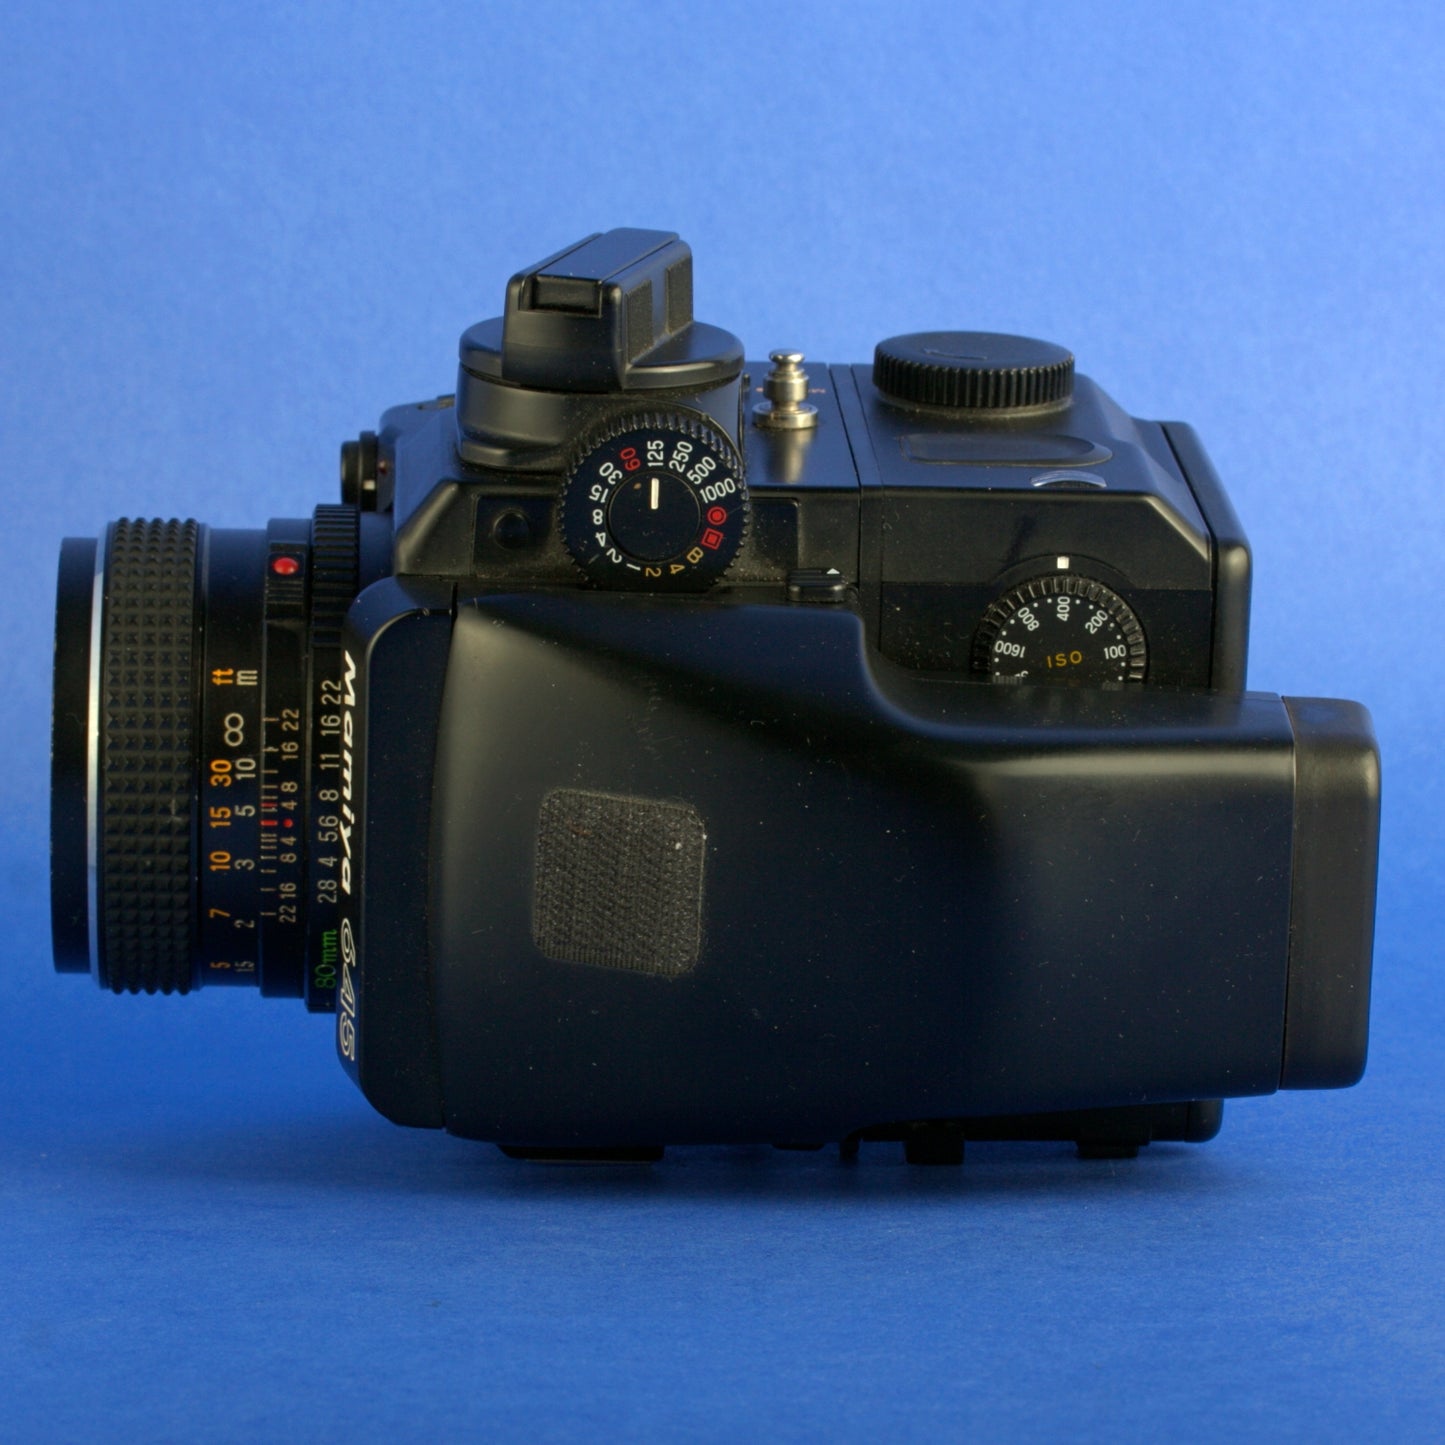 Mamiya 645 Super Medium Format Camera Kit